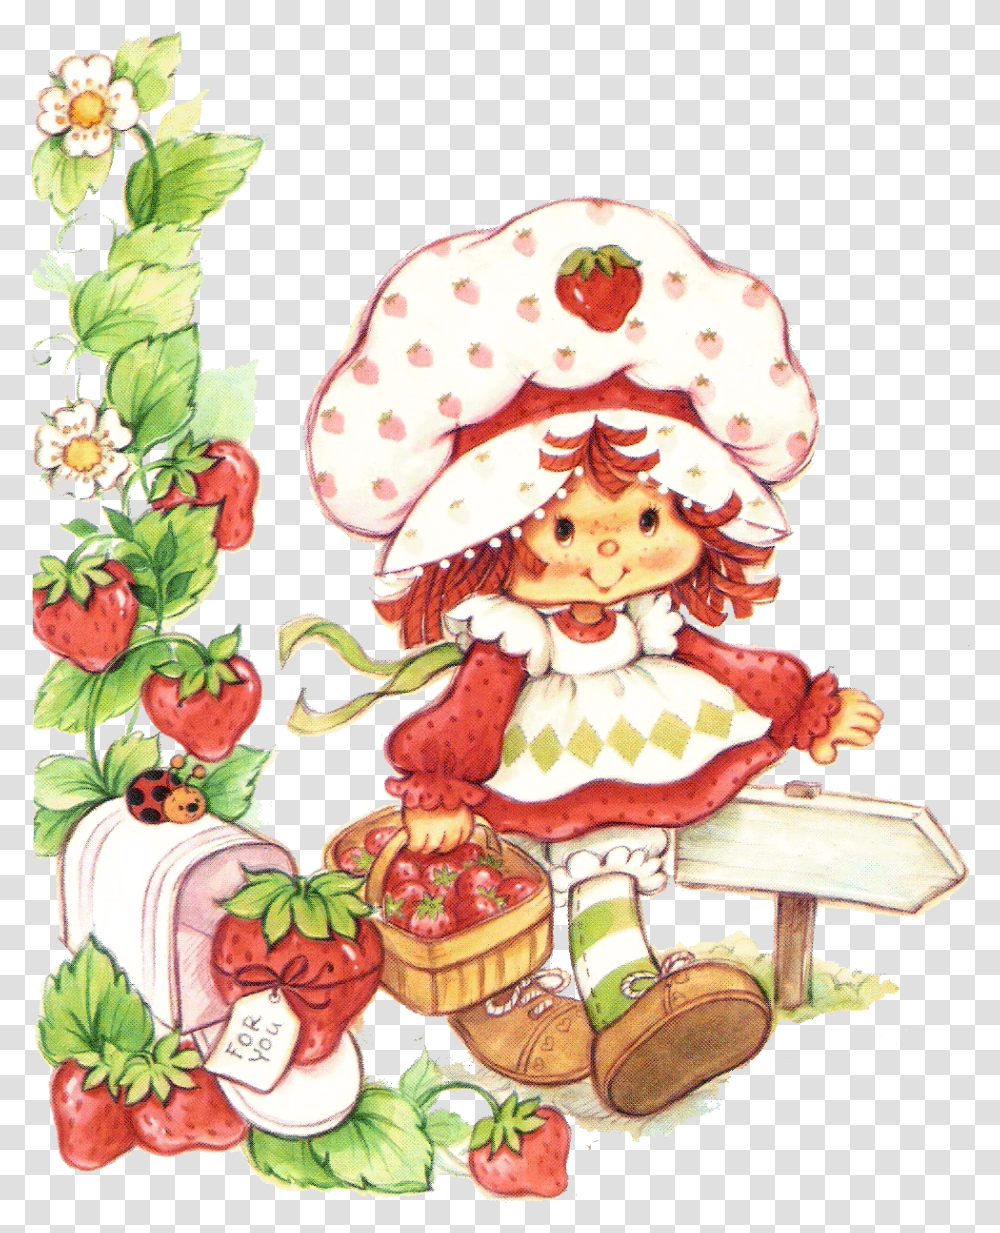 Strawberry Shortcake Vintage, Plant, Flower, Wedding Cake Transparent Png